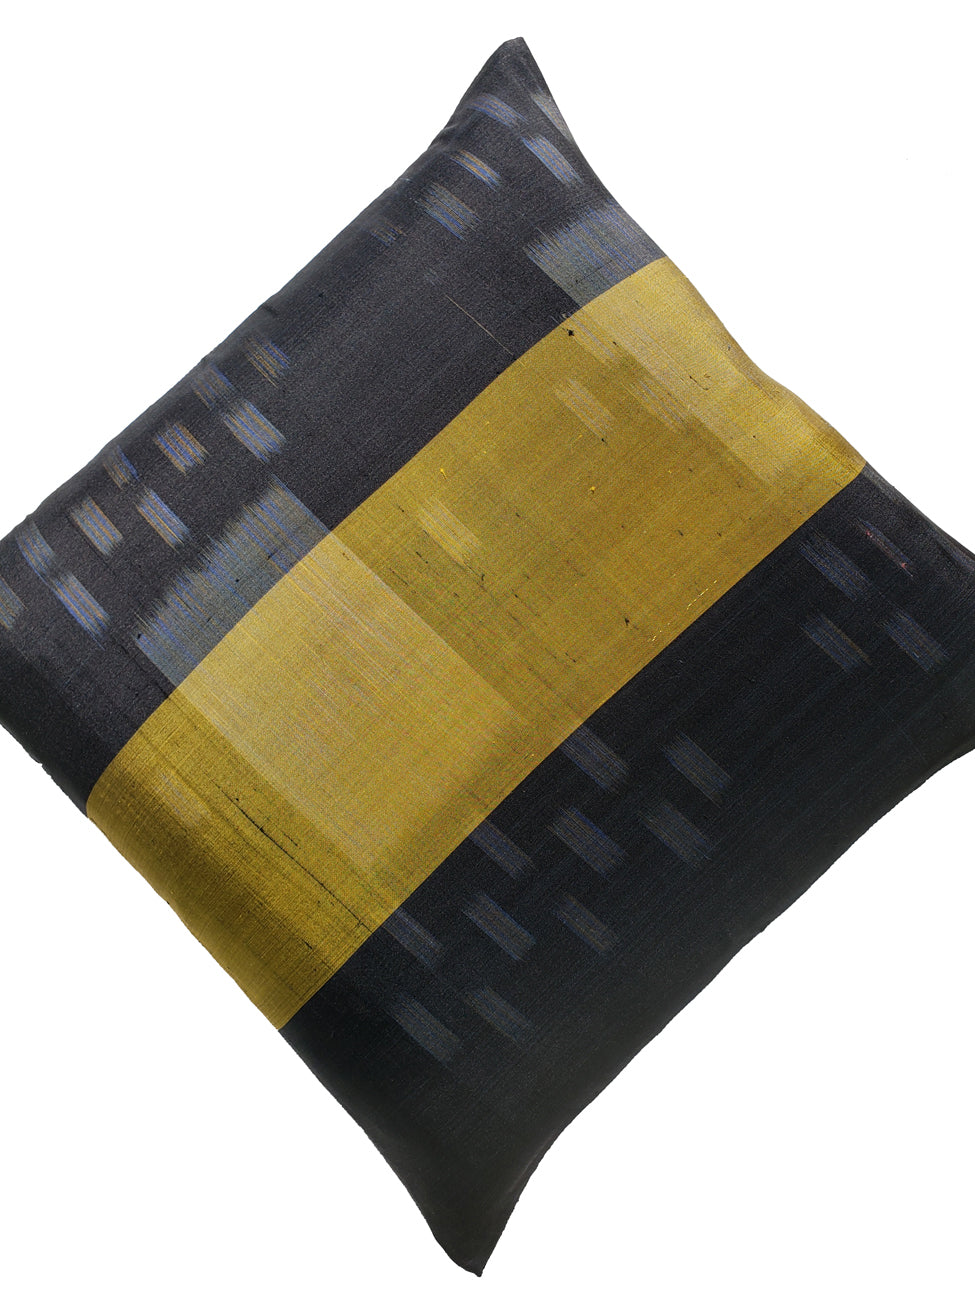 Thai Silk Modern Ikat Pillow Black Lemongrass